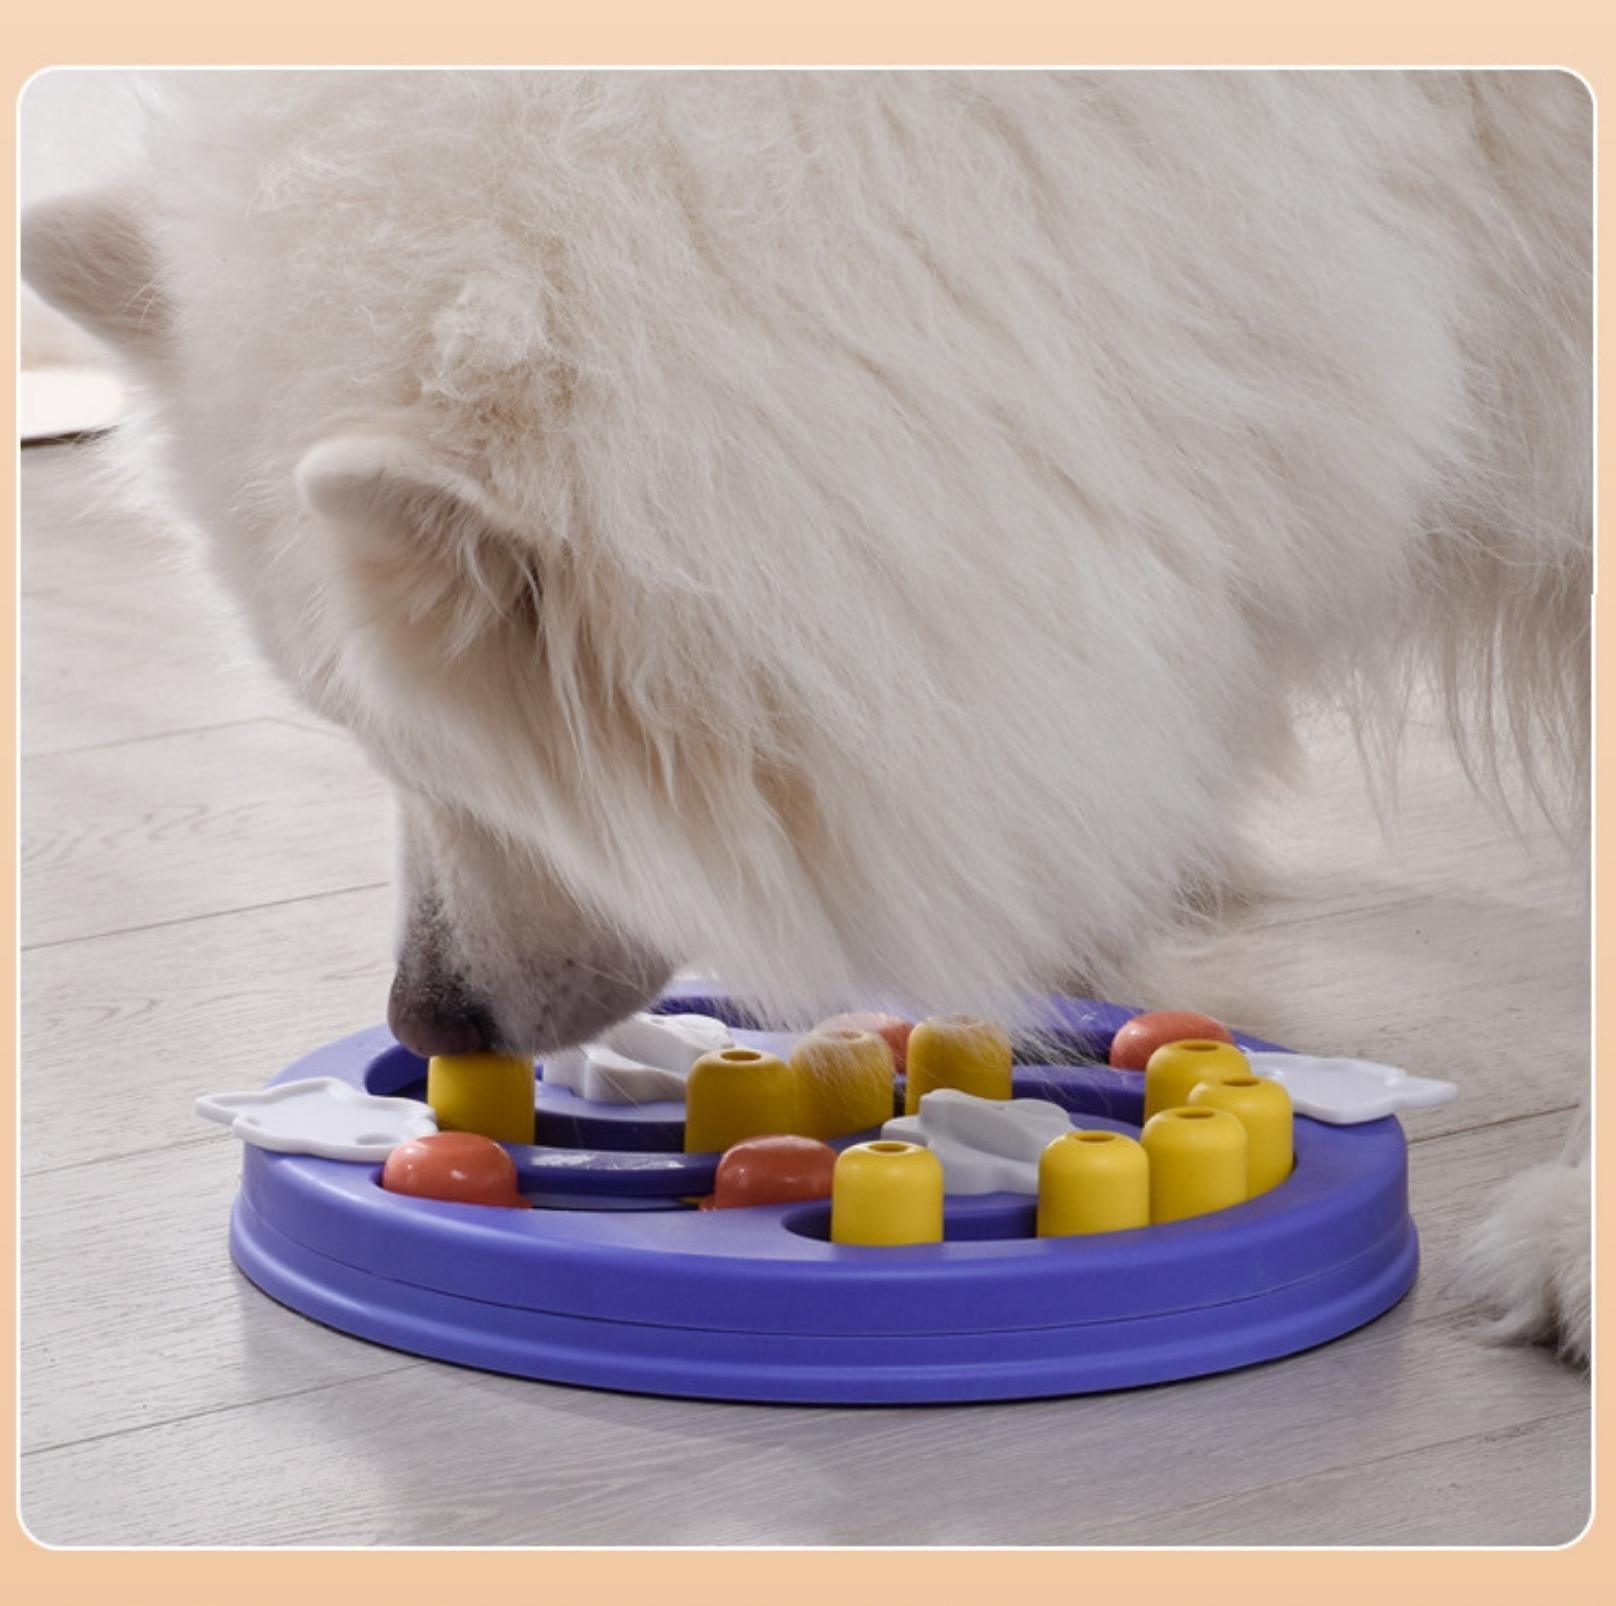 Colourful Dog Puzzle Toy Pet Intelligence Training Toy - {{product.type}} - PawPawUp